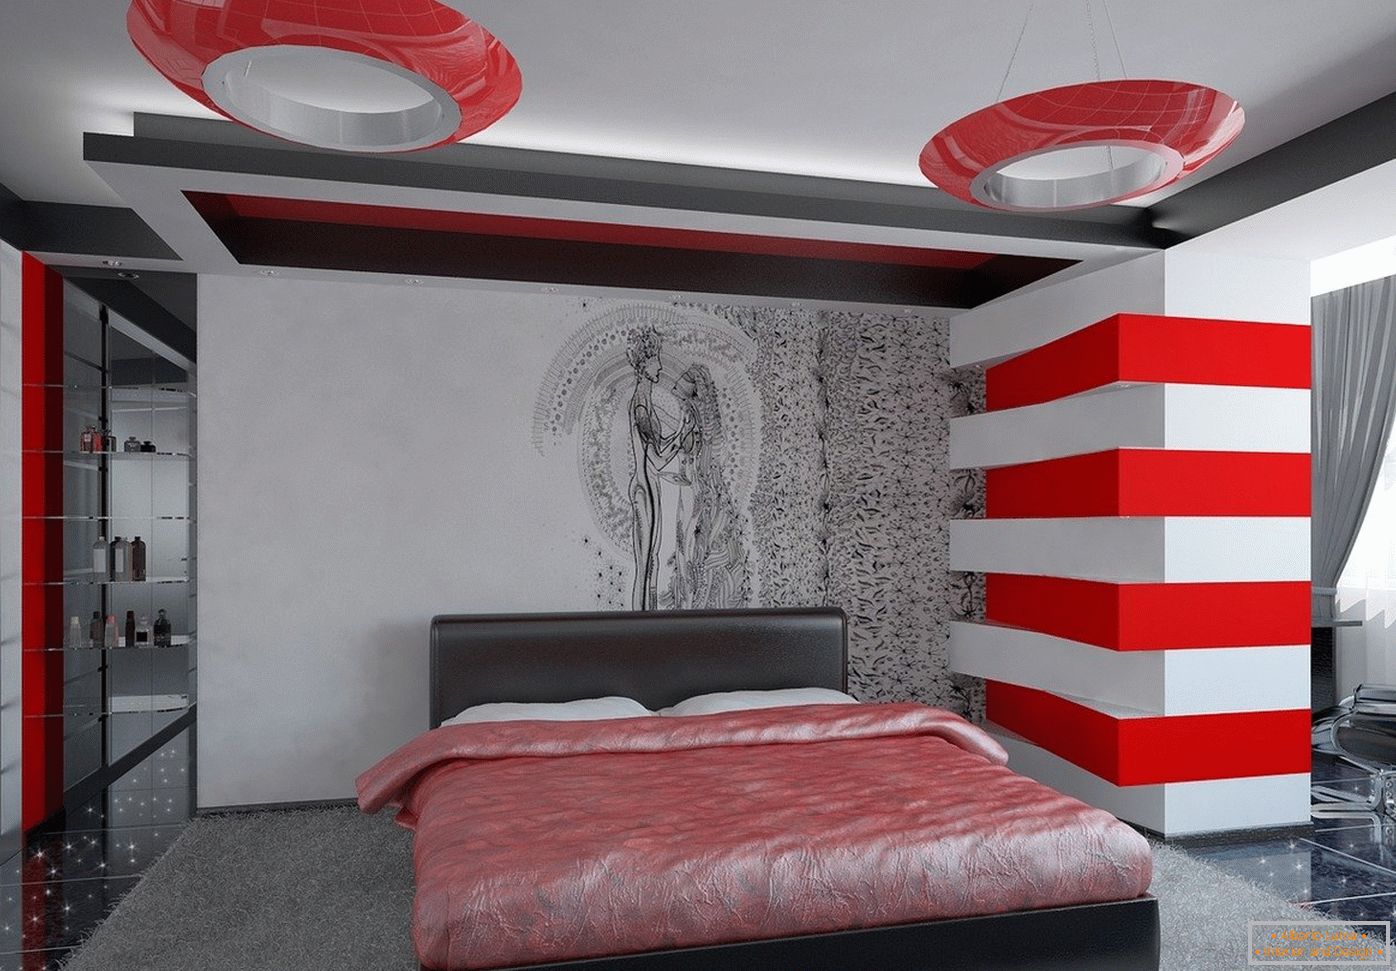 Helle Farben im Inneren des Schlafzimmers im Stil von High-Tech